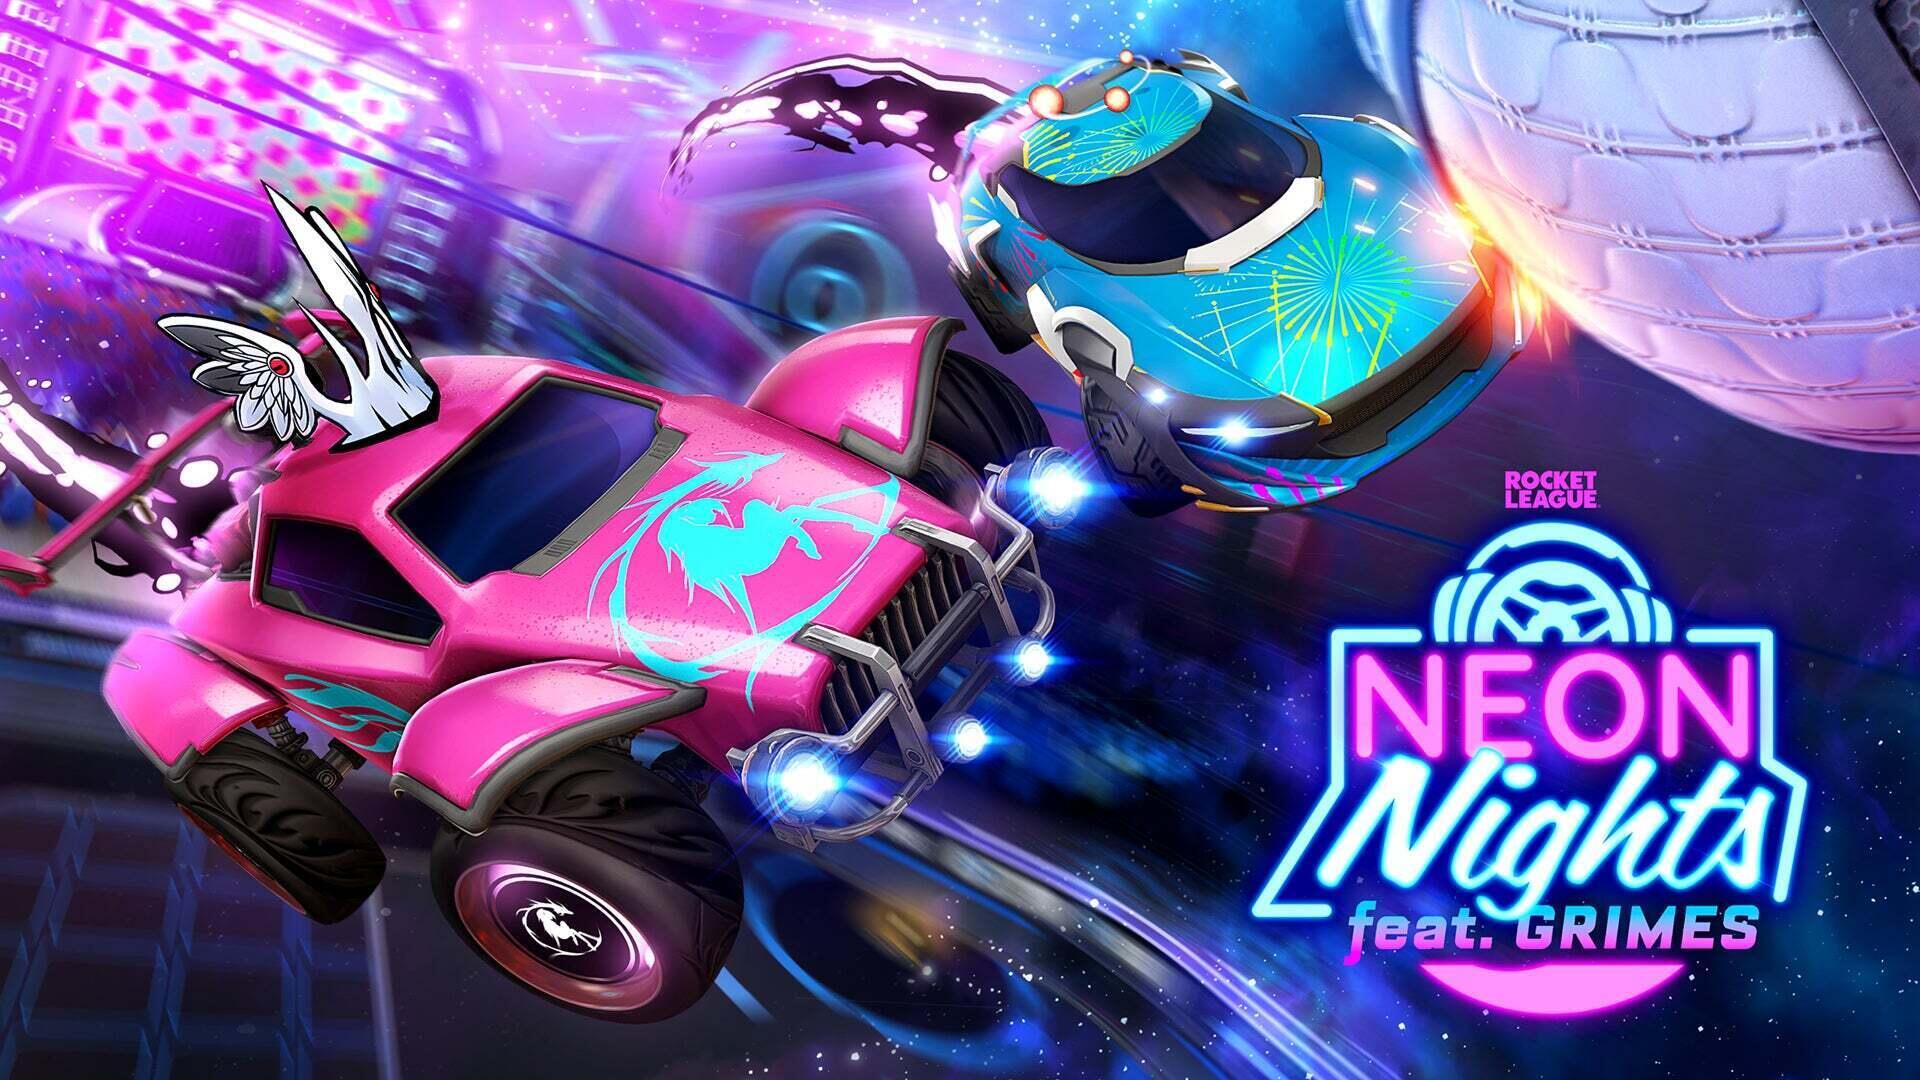 Neon Nights celebra a música do Rocket League Image